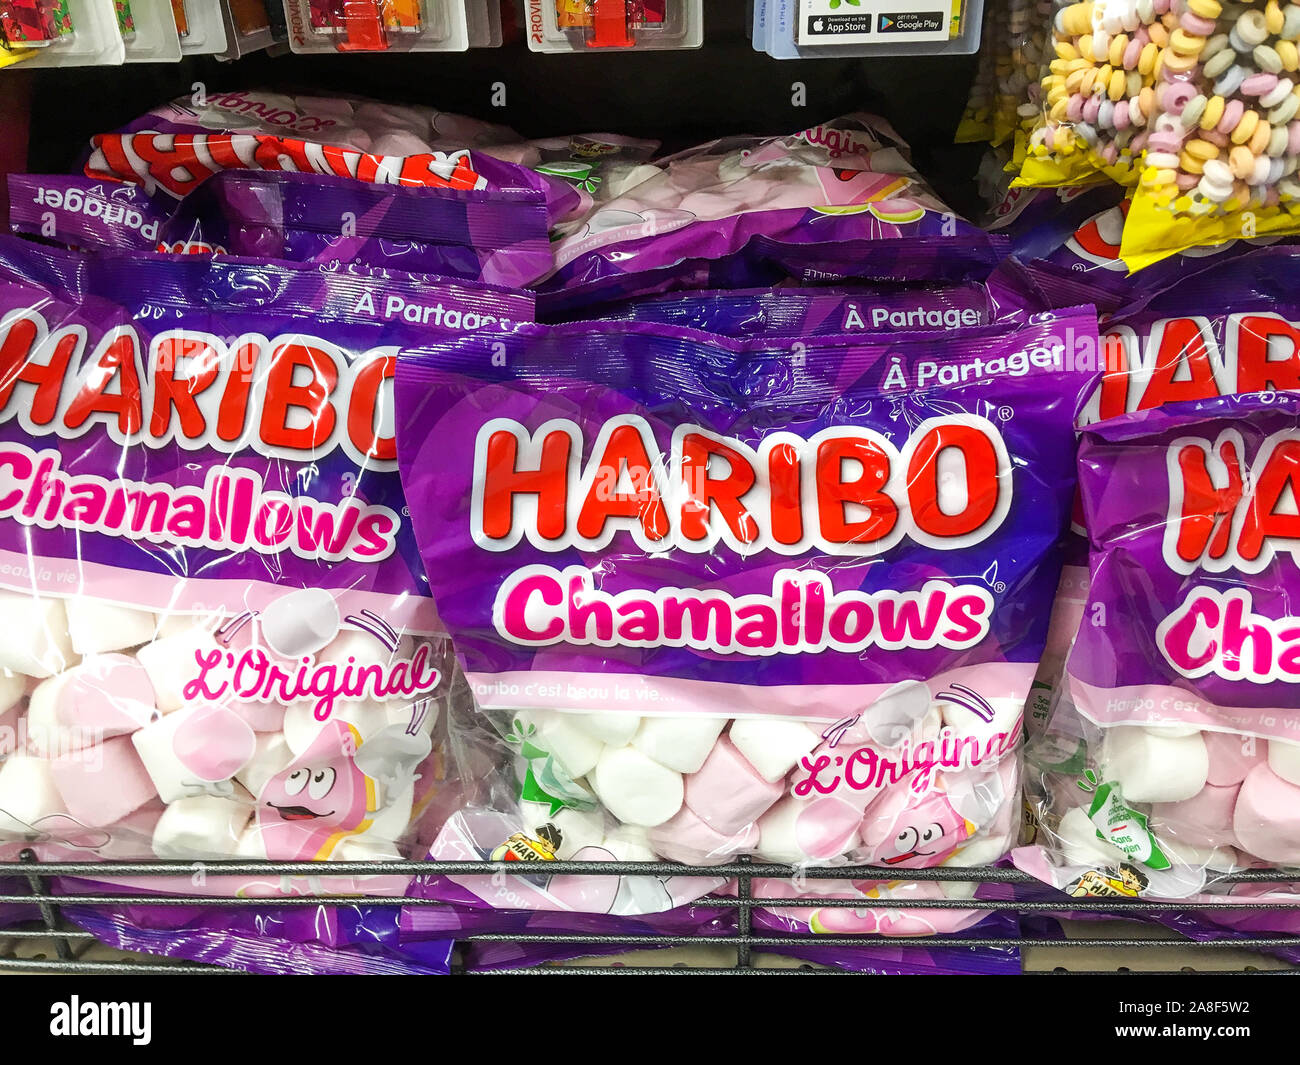 Bonbons Haribo sous emballage plastique, Lyon, France Banque D'Images